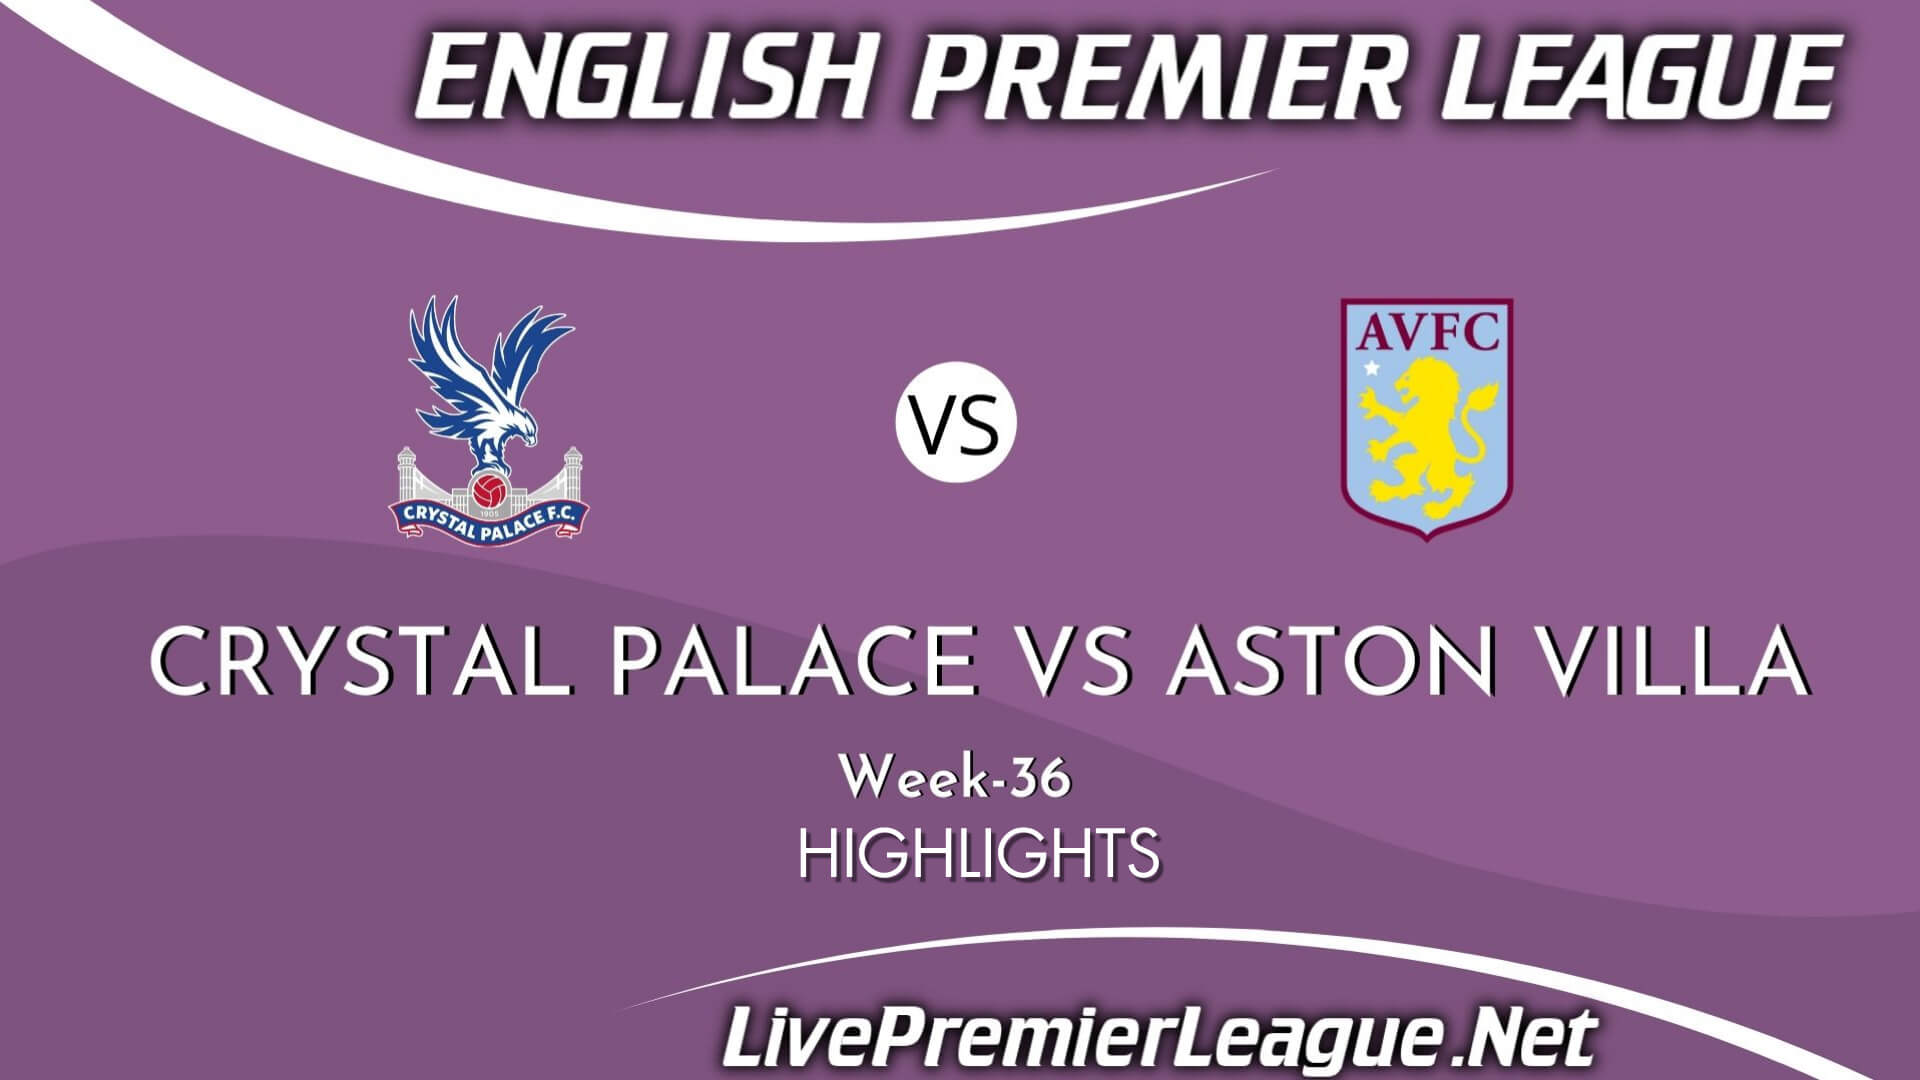 Crystal Palace Vs Aston Villa Highlights 2021 Week 36